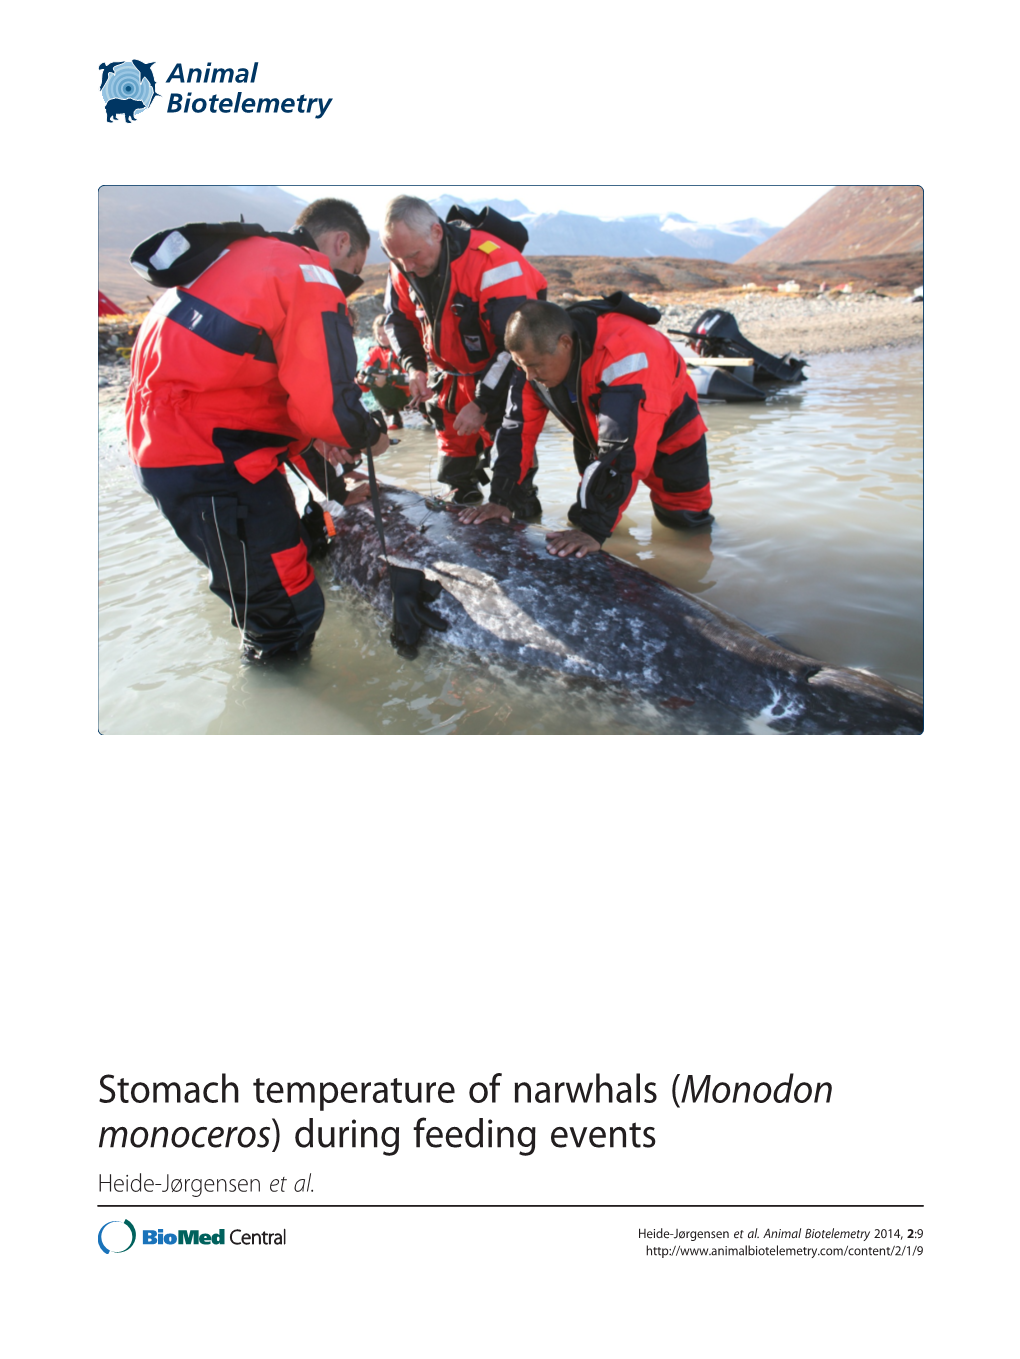 Stomach Temperature of Narwhals (Monodon Monoceros) During Feeding Events Heide-Jørgensen Et Al